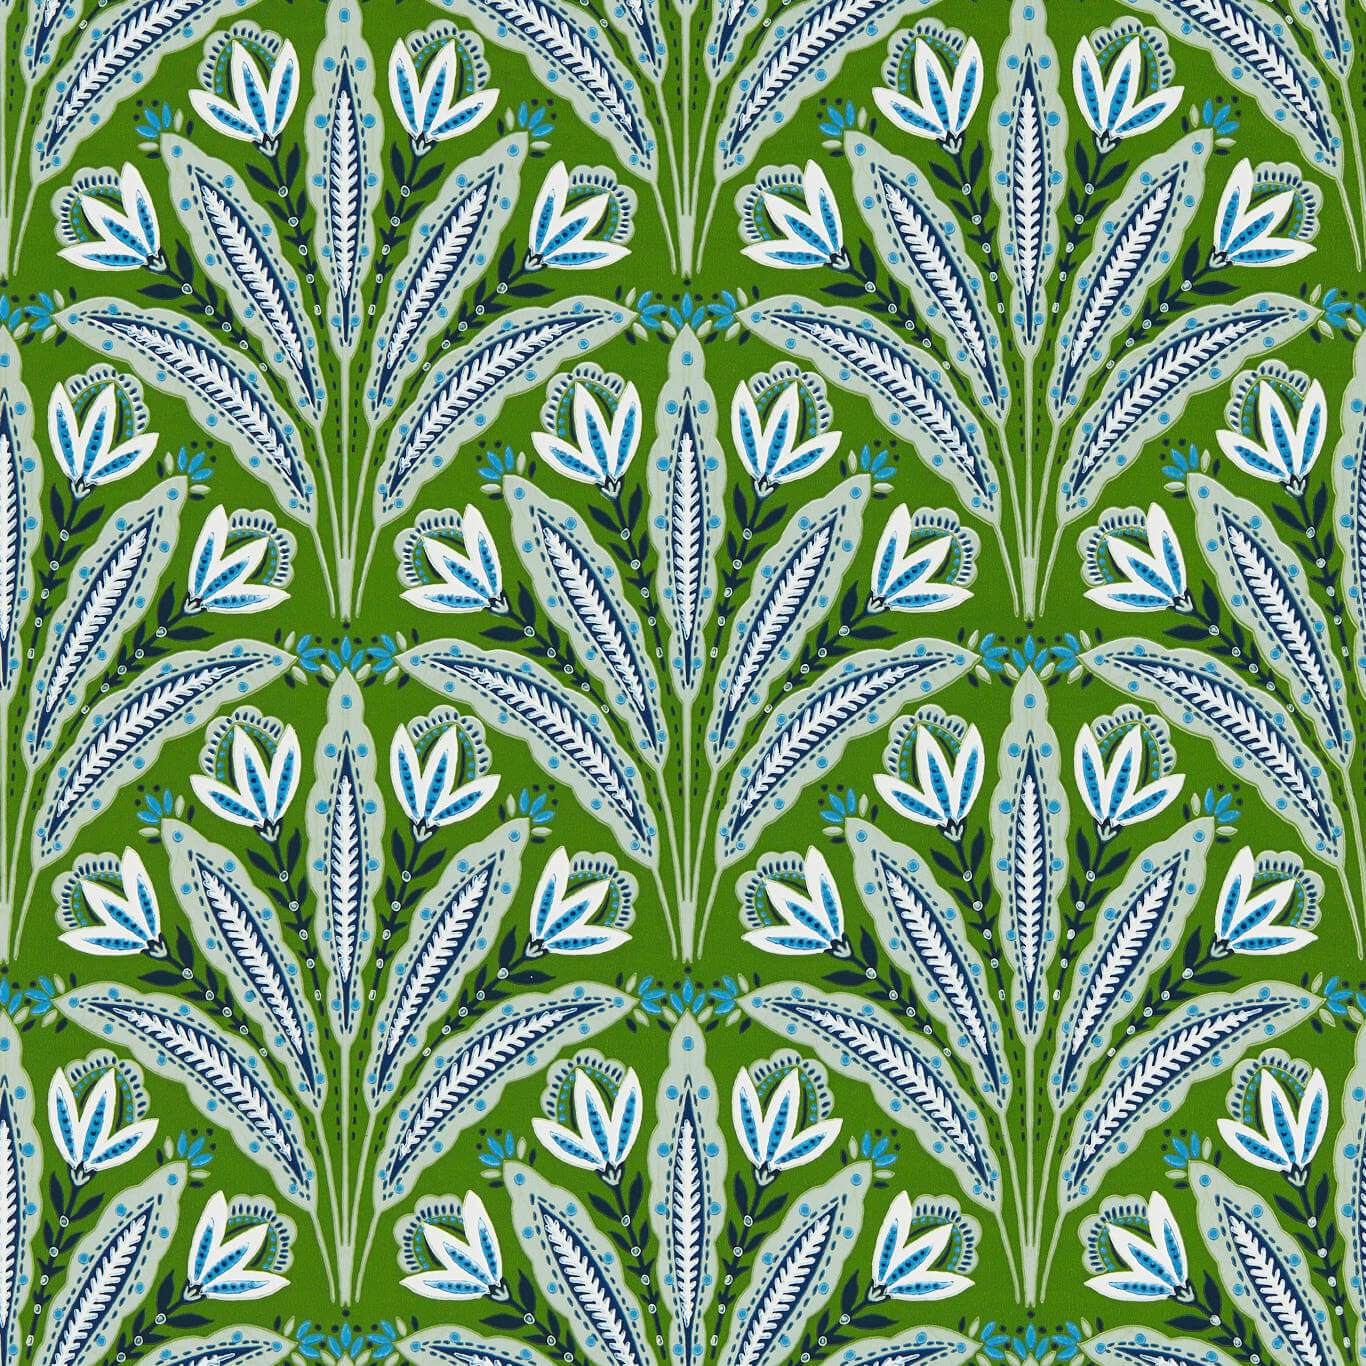 Attingham Cobalt/Green Wp Cobalt/Green Wallpaper W0193/01 by Clarke & Clarke